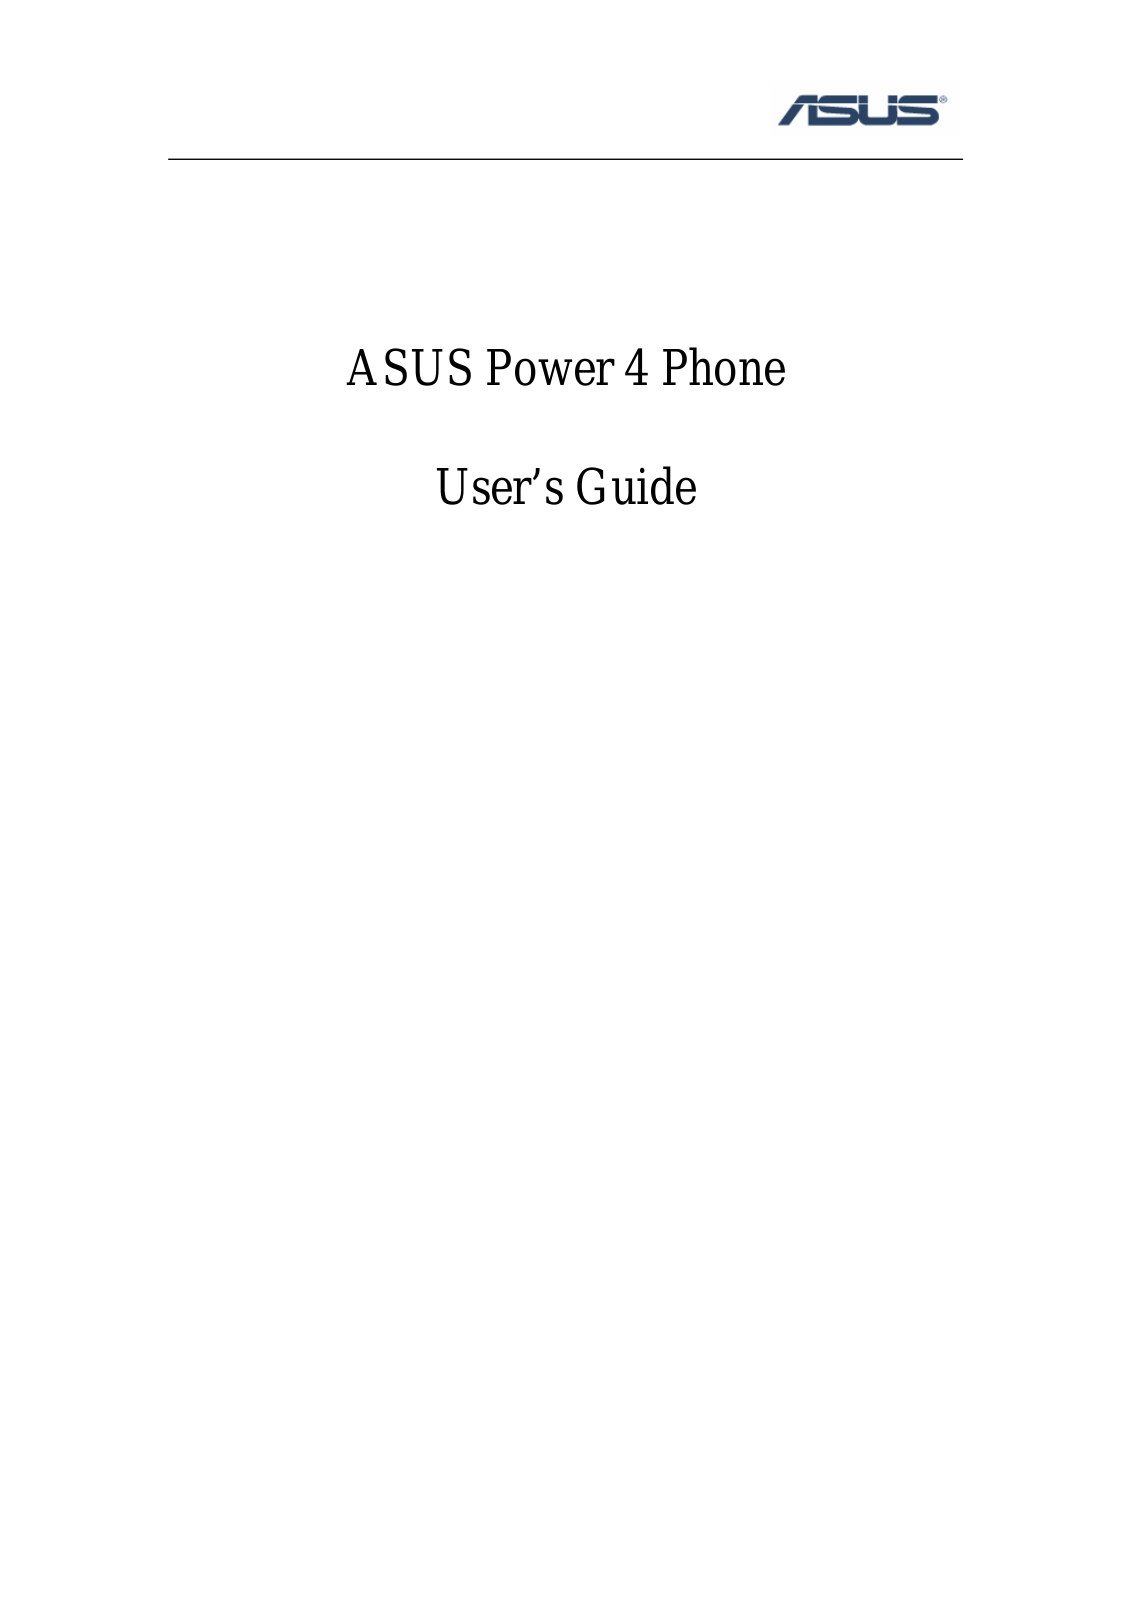 ASUS Power 4 Phone User Manual